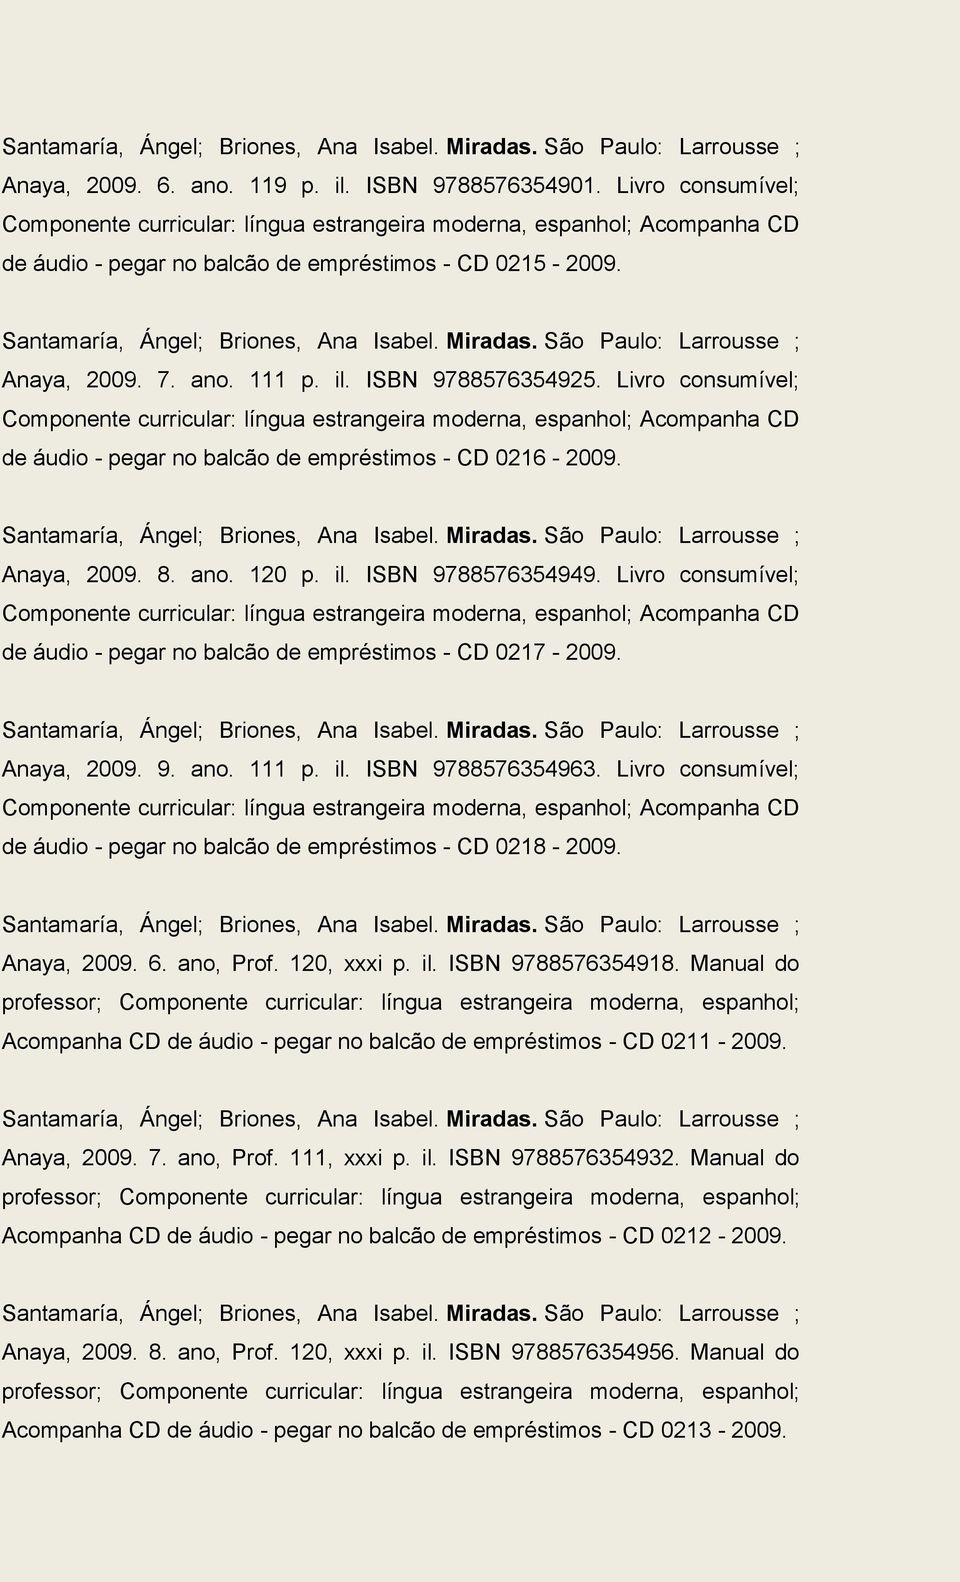 Santamaría, Ángel; Briones, Ana Isabel. Miradas. São Paulo: Larrousse ; Anaya, 2009. 8. ano. 120 p. il. ISBN 9788576354949. Livro consumível; de áudio - pegar no balcão de empréstimos - CD 0217-2009.